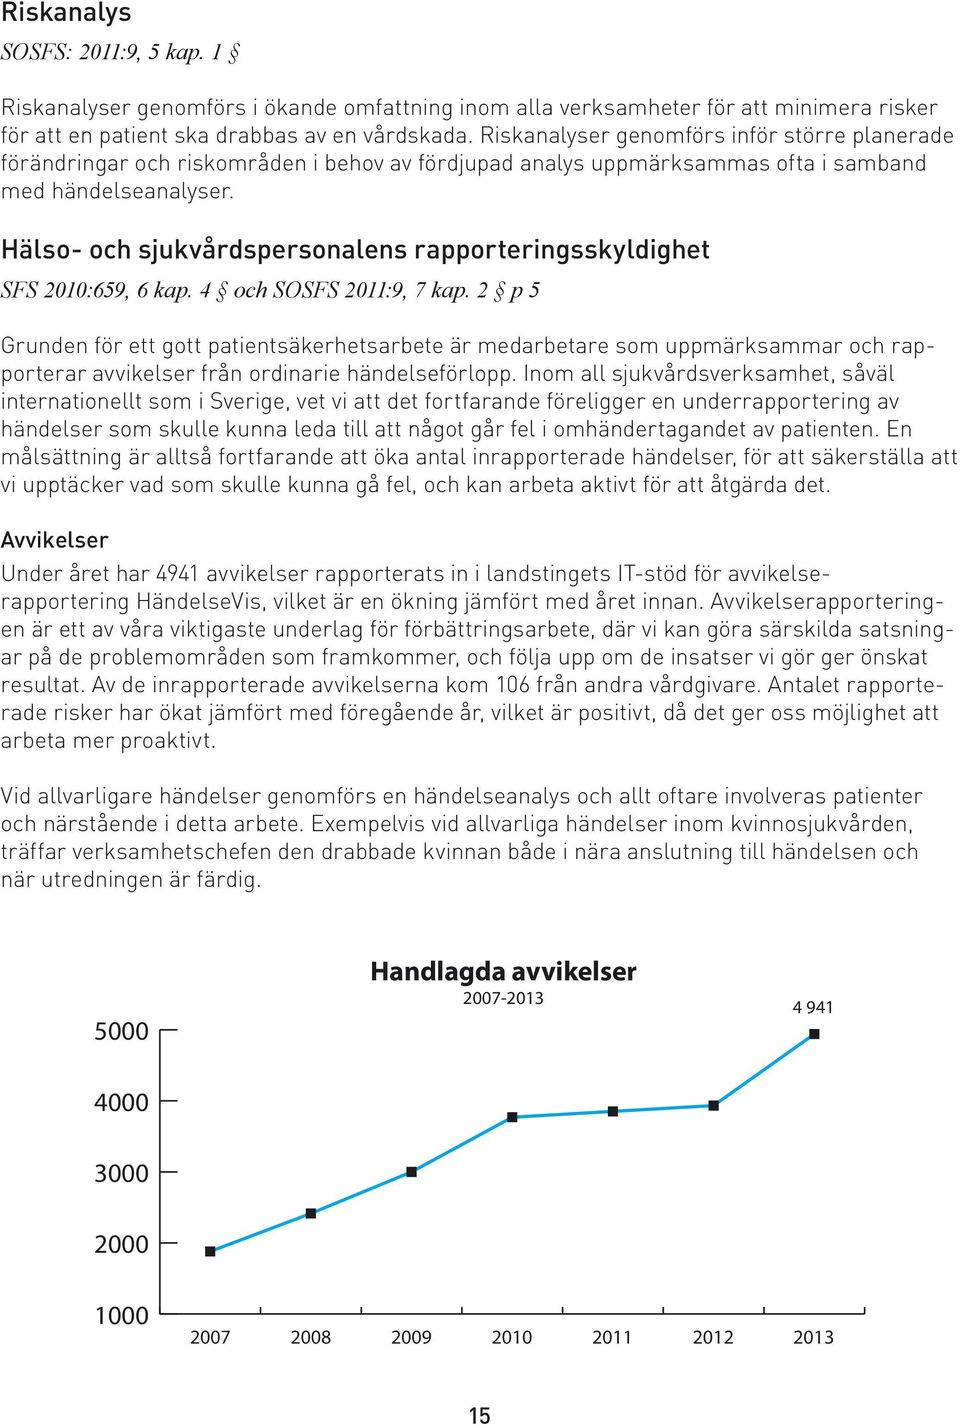 Hälso- och sjukvårdspersonalens rapporteringsskyldighet SFS 2010:659, 6 kap. 4 och SOSFS 2011:9, 7 kap.